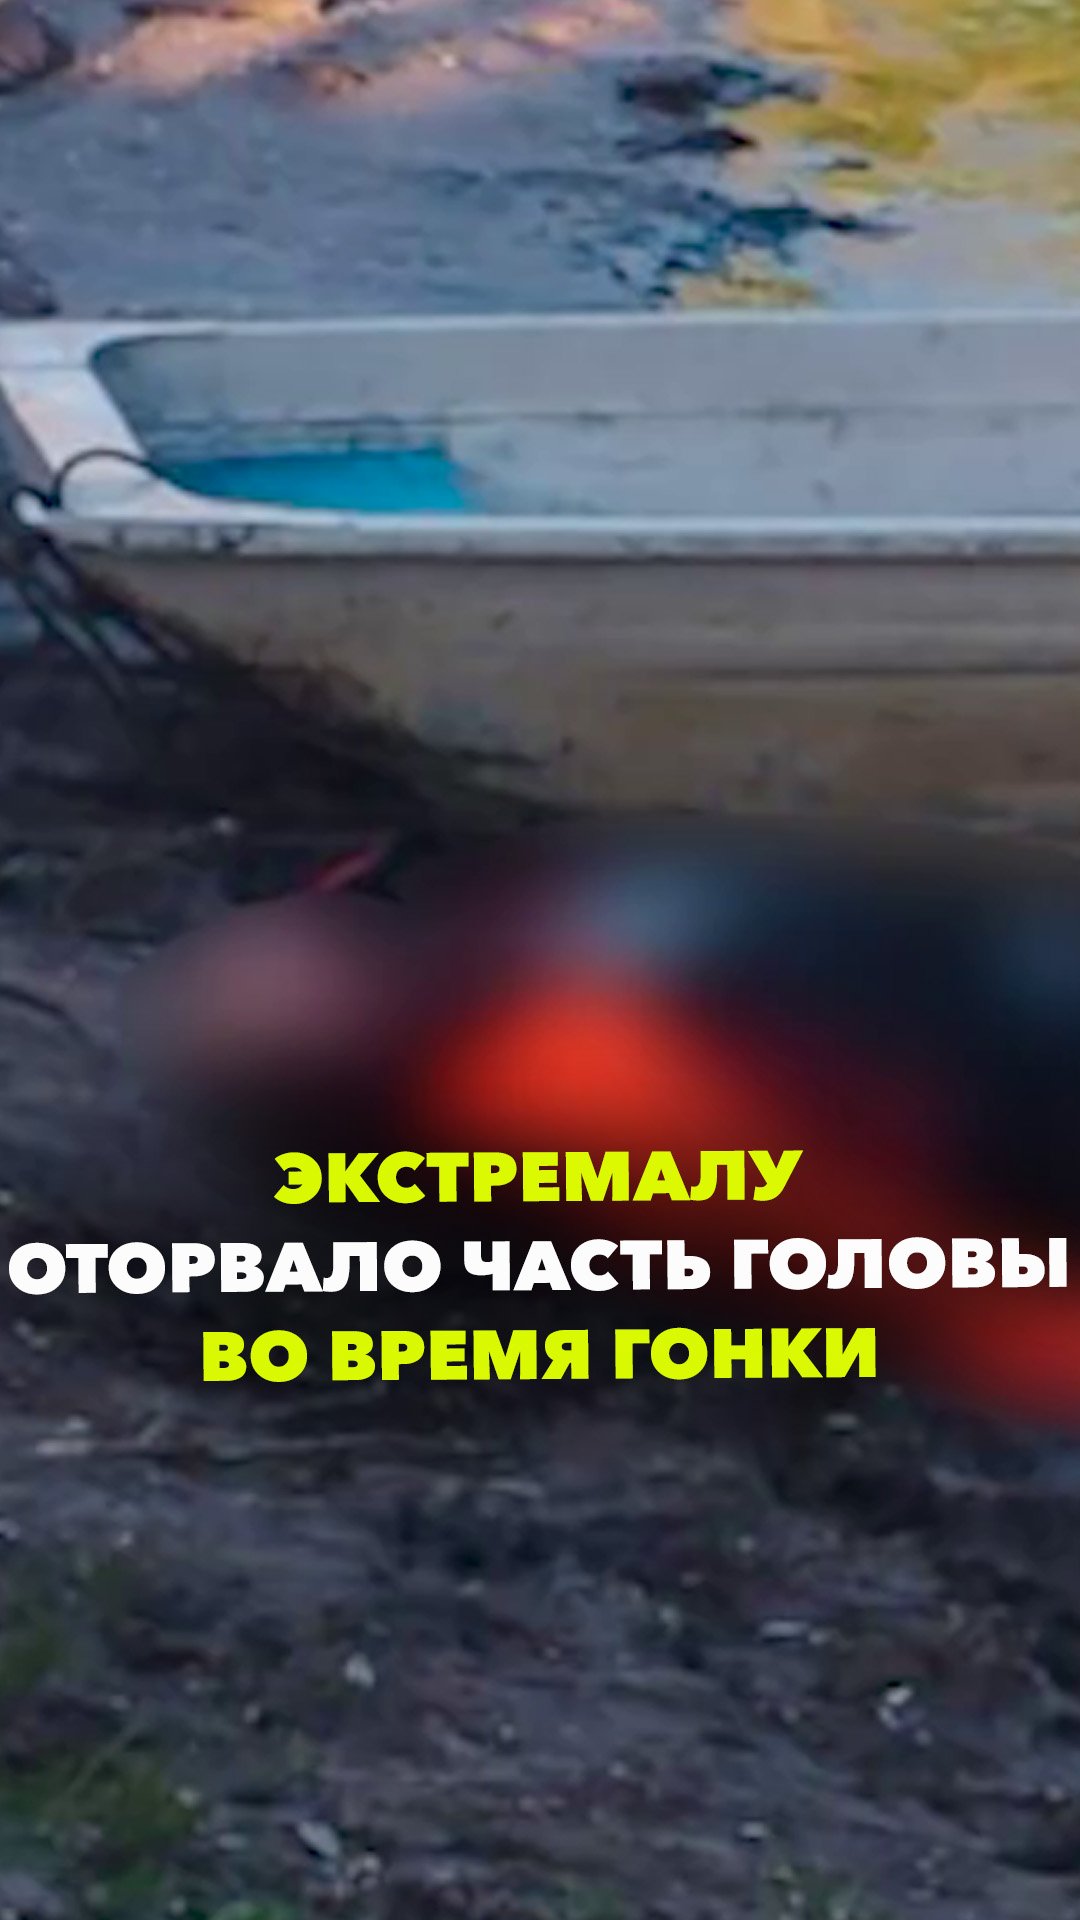 Оторвало половину головы из-за гонки по реке: чудовищная смерть в Башкирии